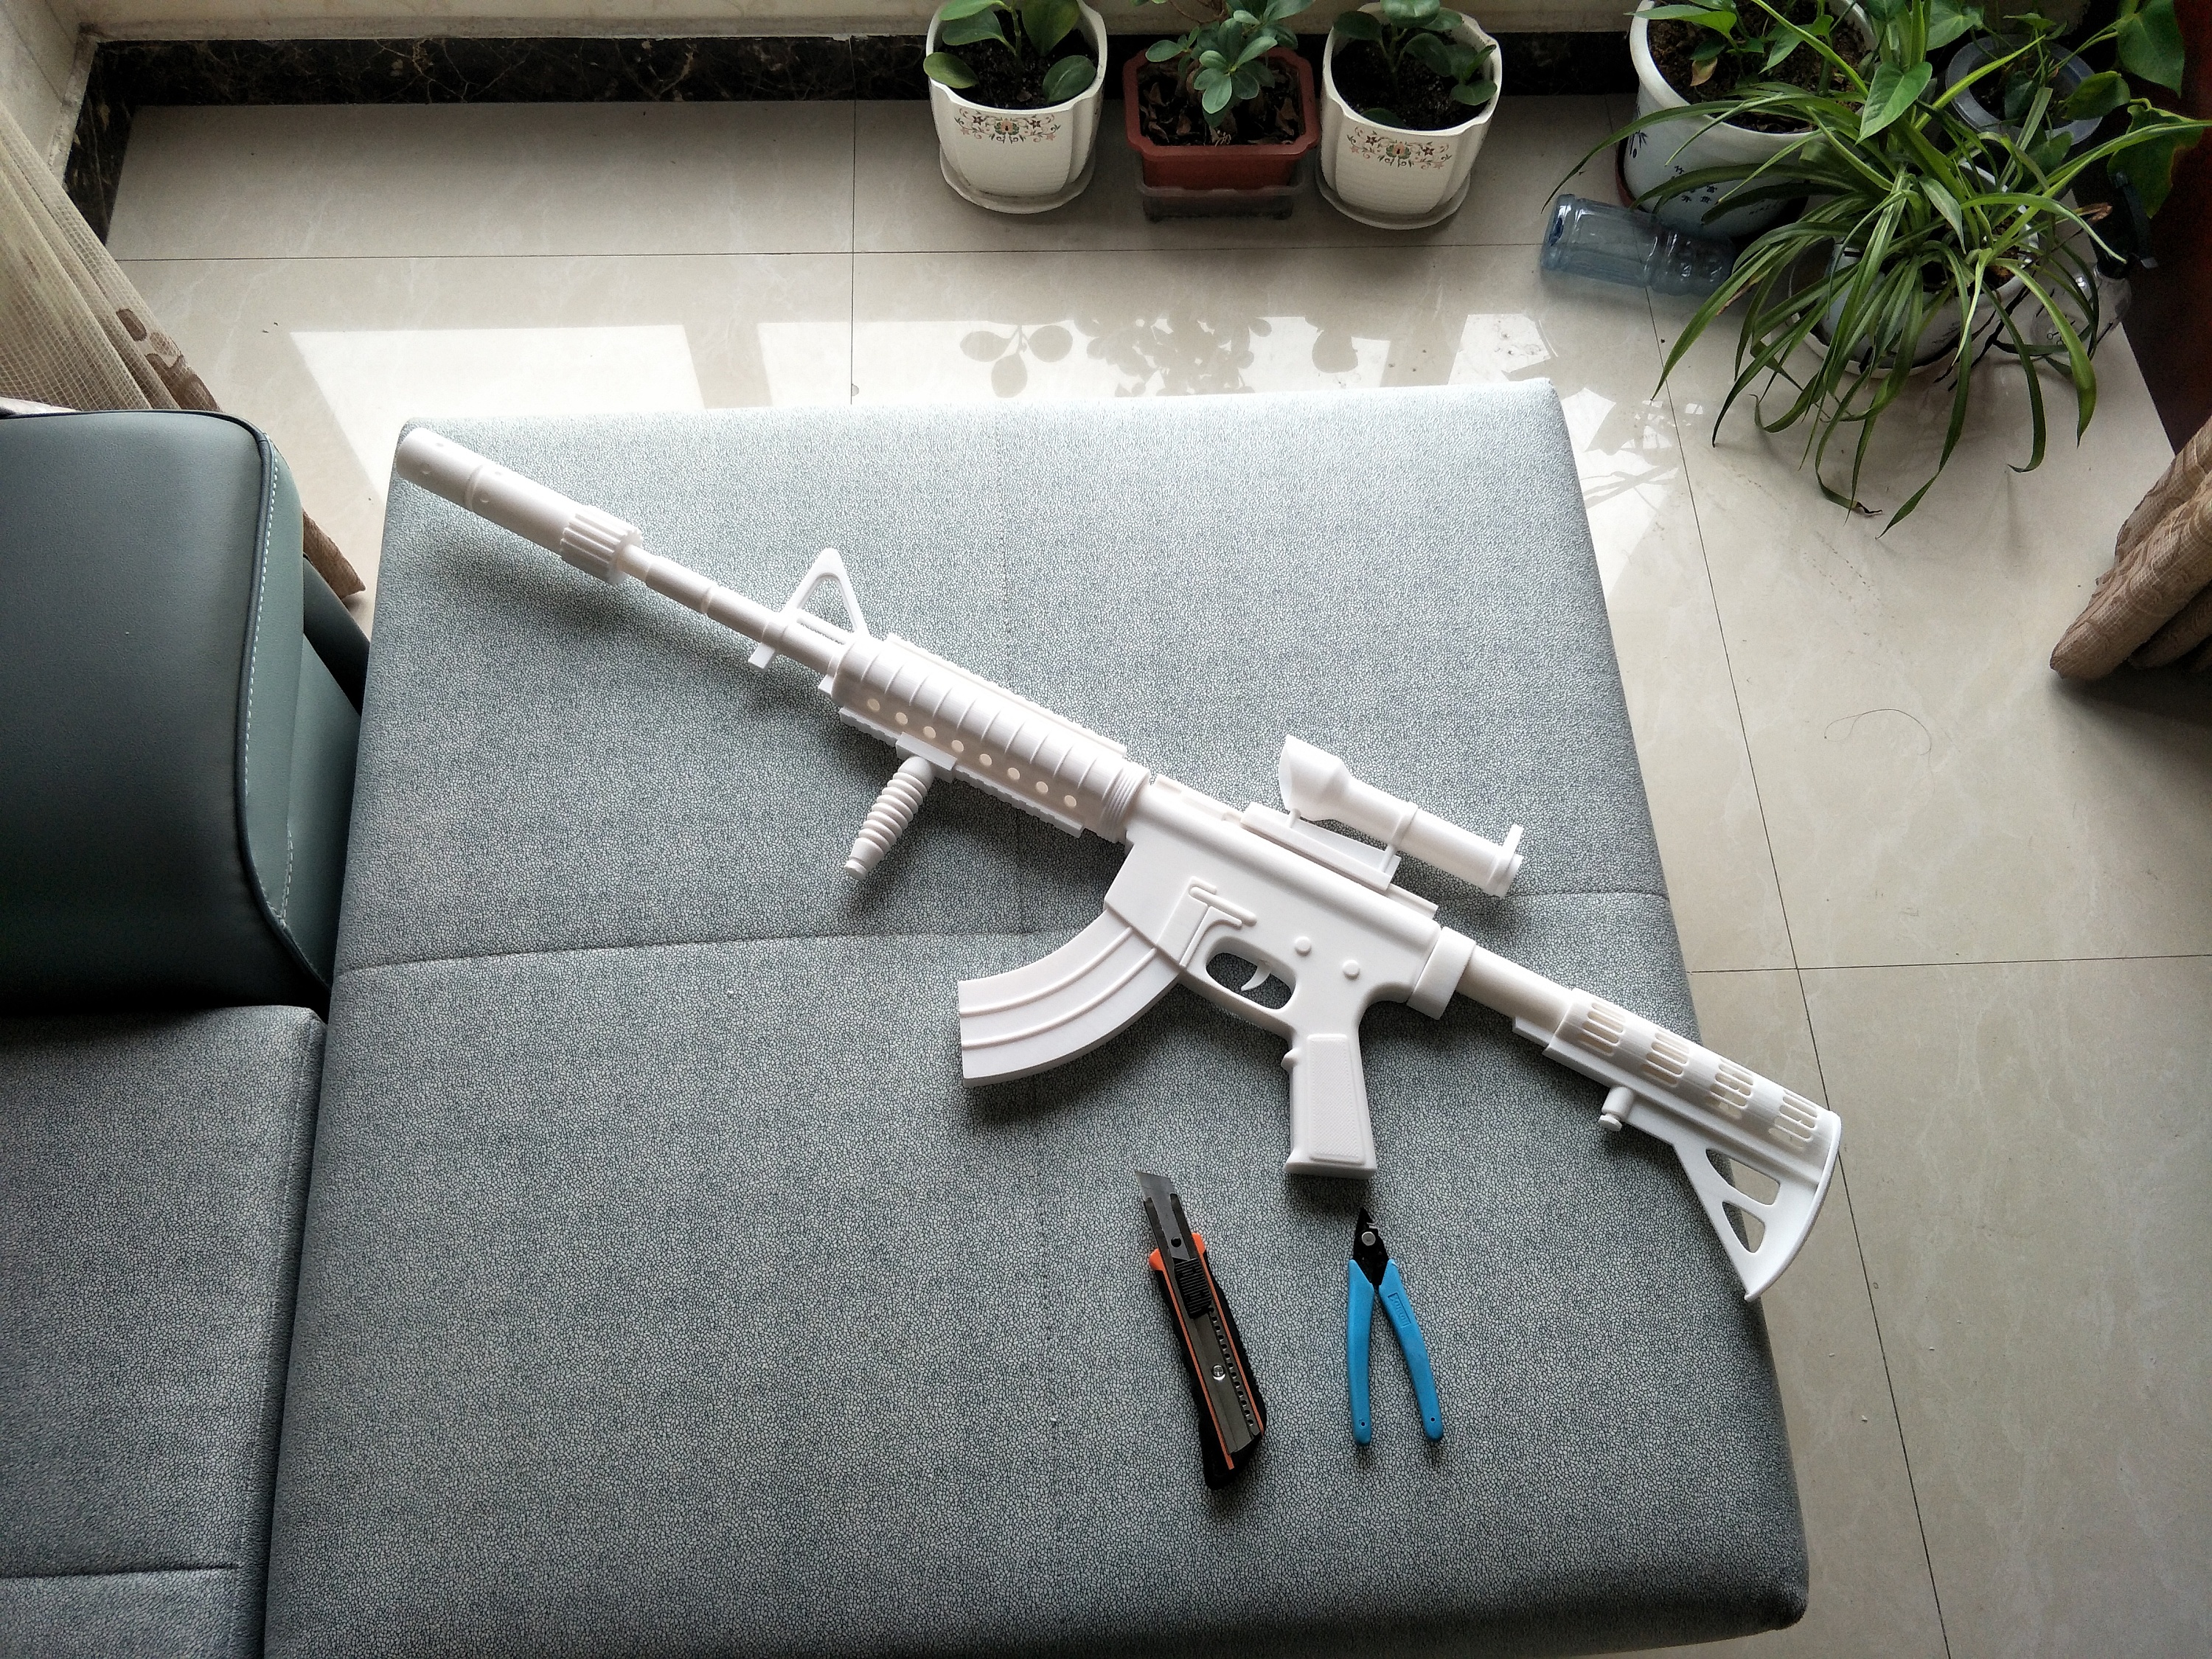 做一个M416玩具枪模型